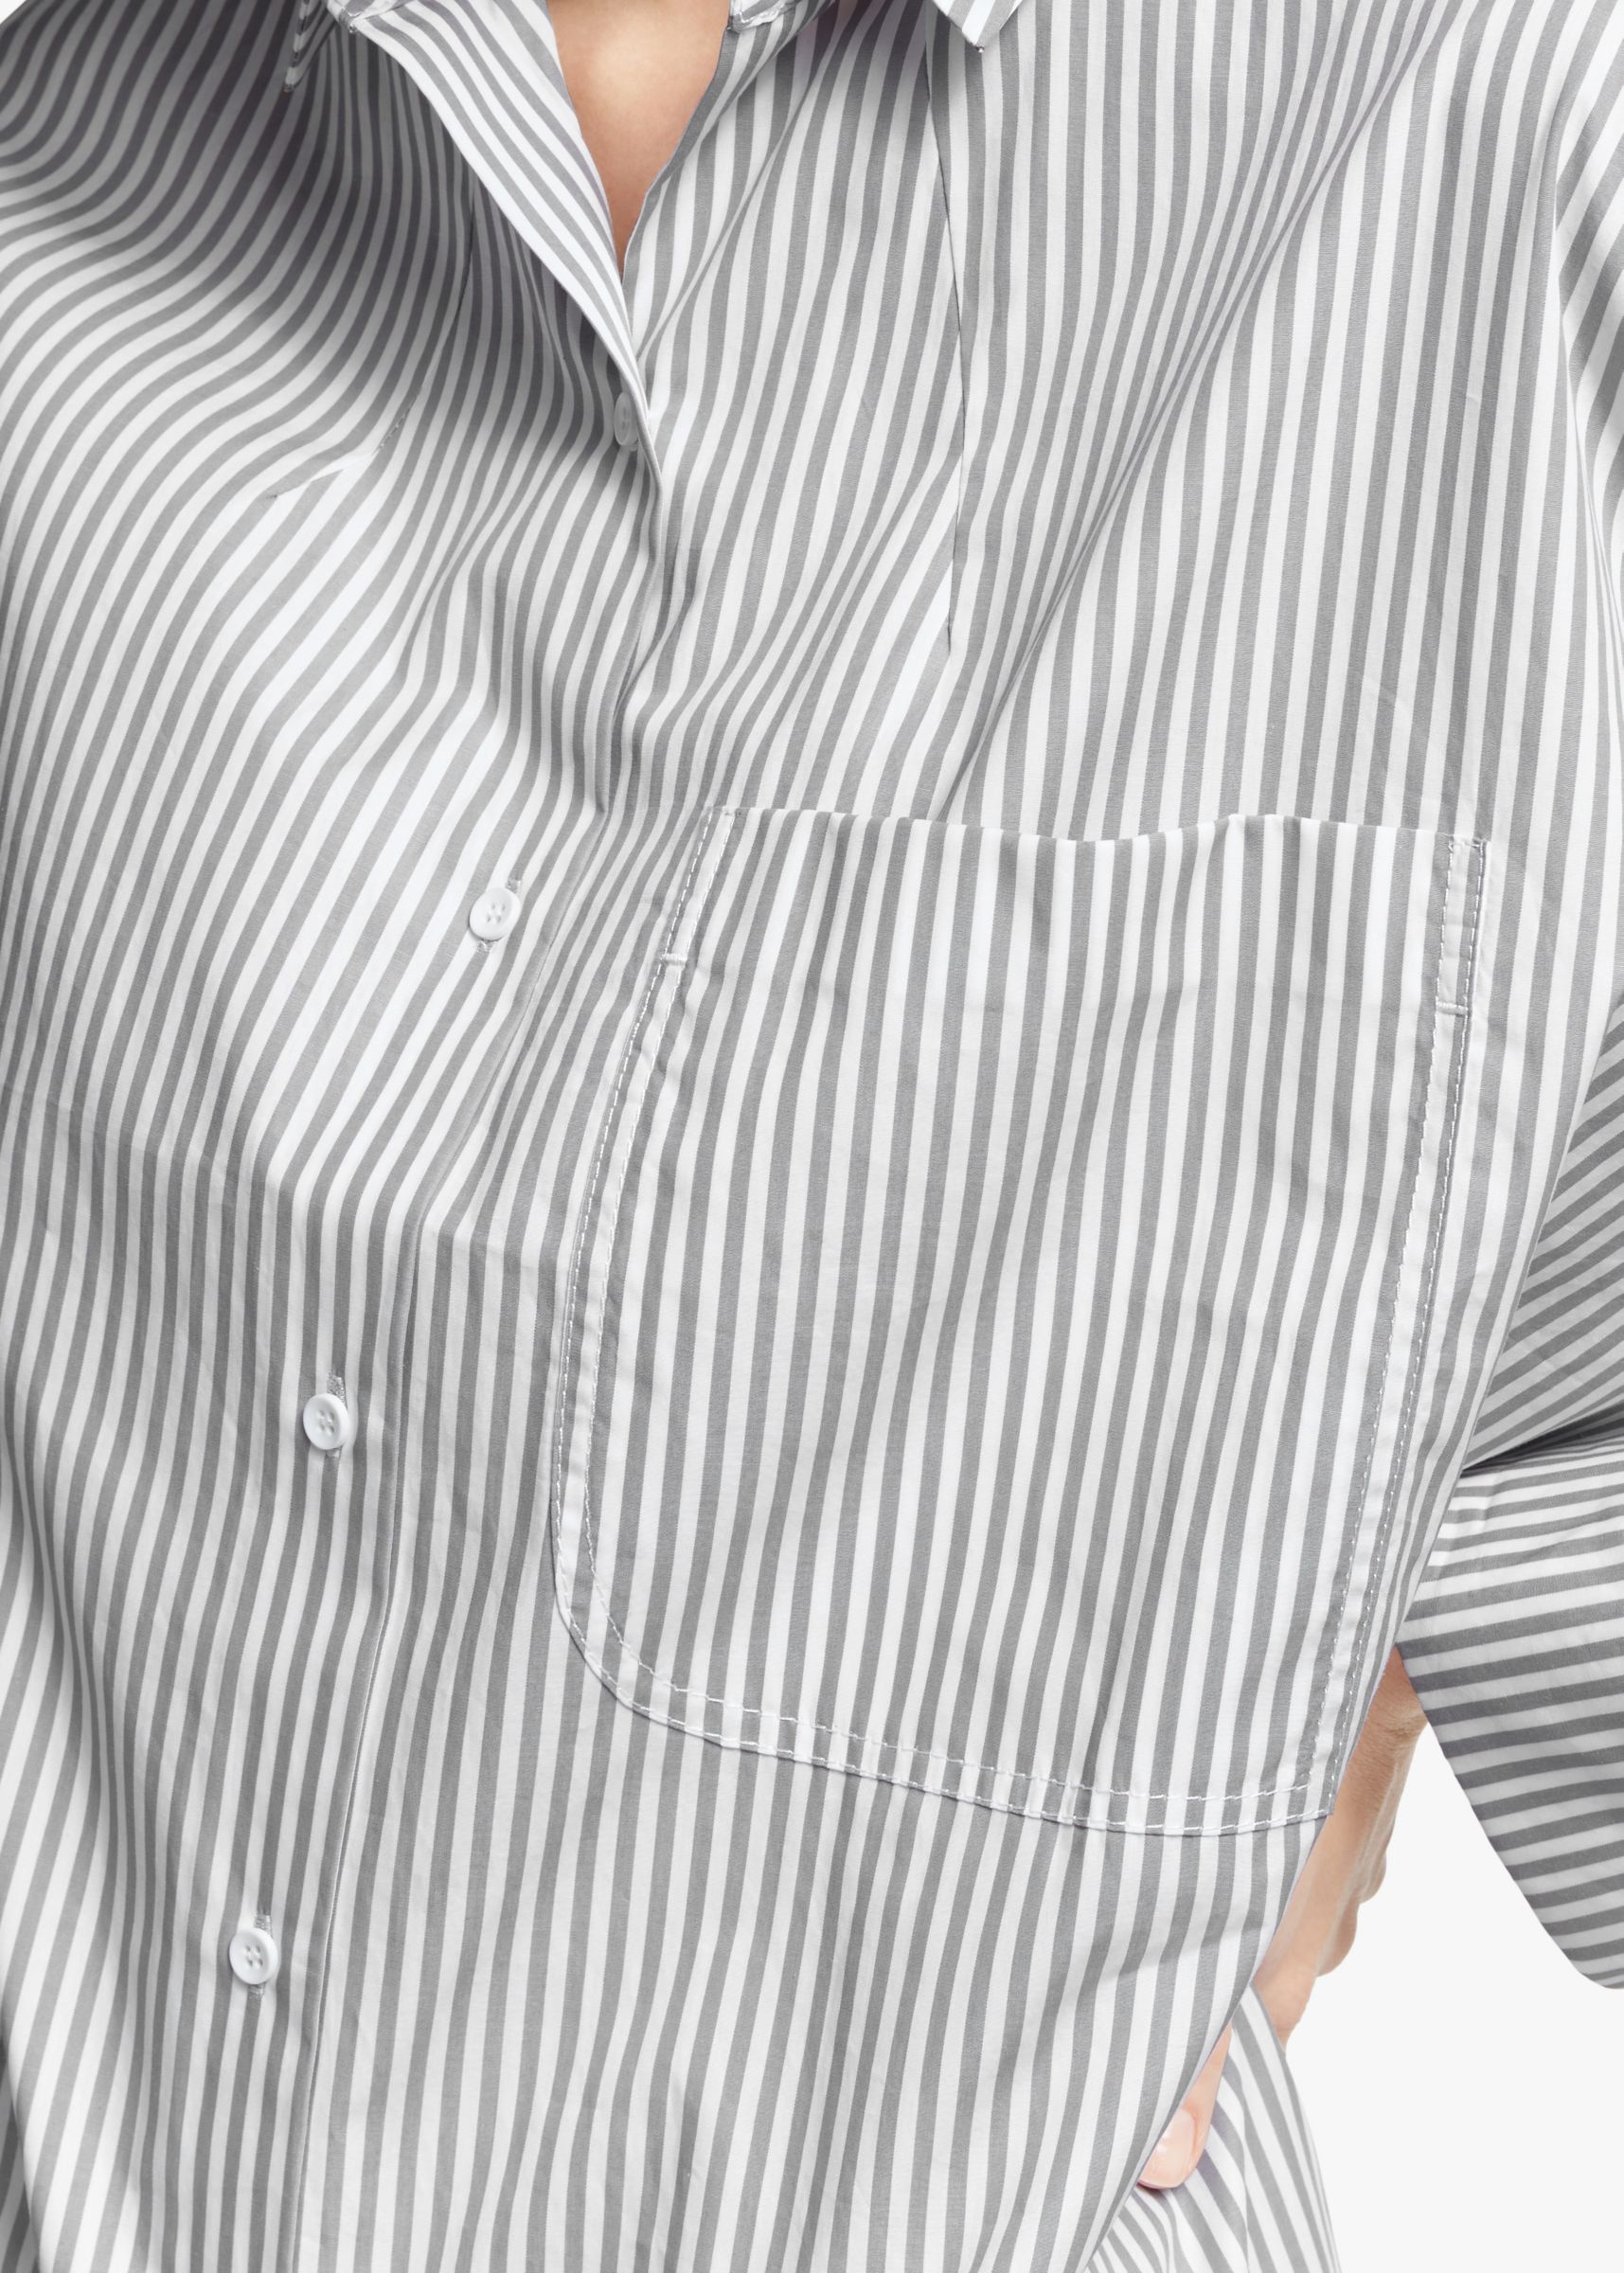 Kin Stripe Cotton Poplin Stripe Shirt, Grey/White, 14